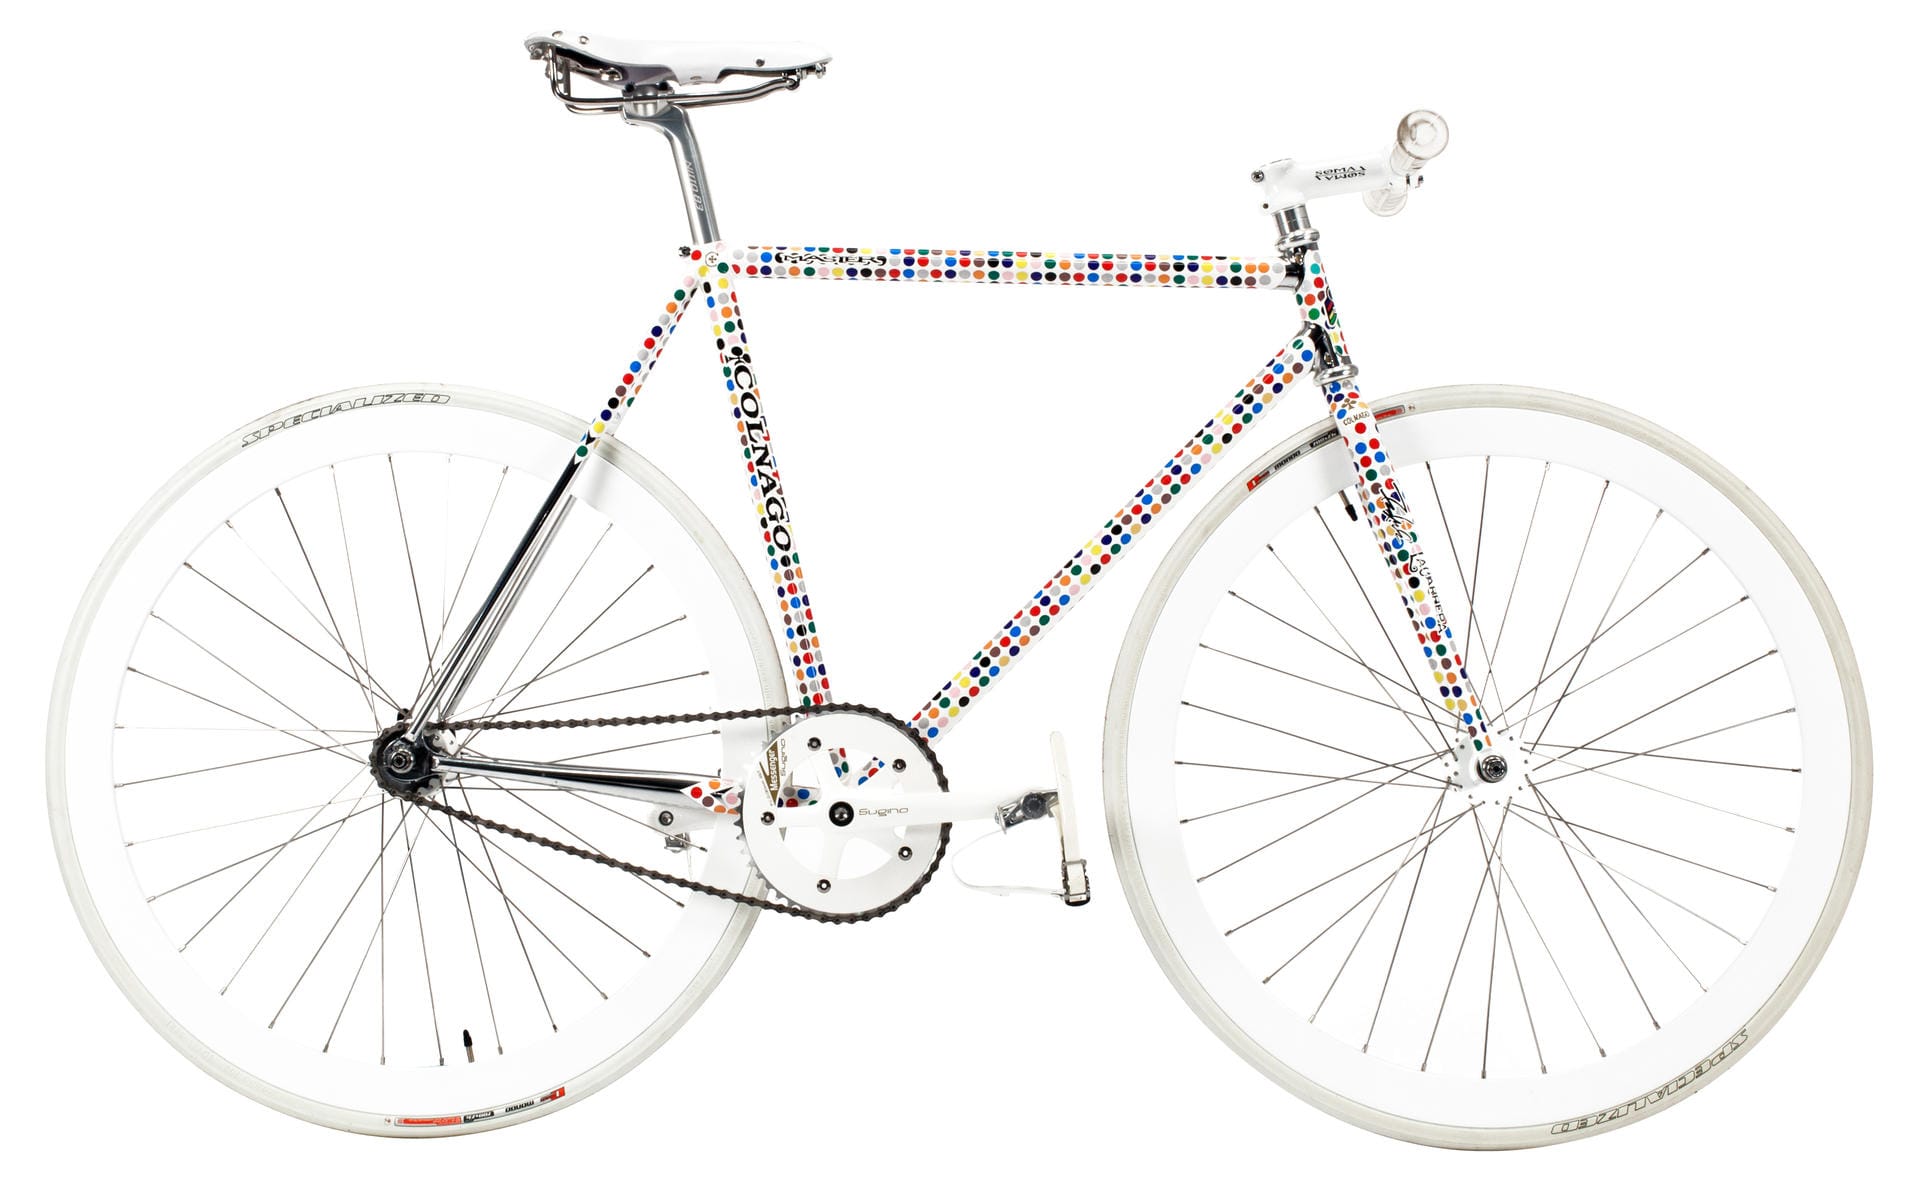 28.000 Dollar ist einem Bieter das italienische Edel-Bike "Master Pista, La Carrera, Futura 2000" wert. Das ist wohl das teuerste Bike der Auktion.